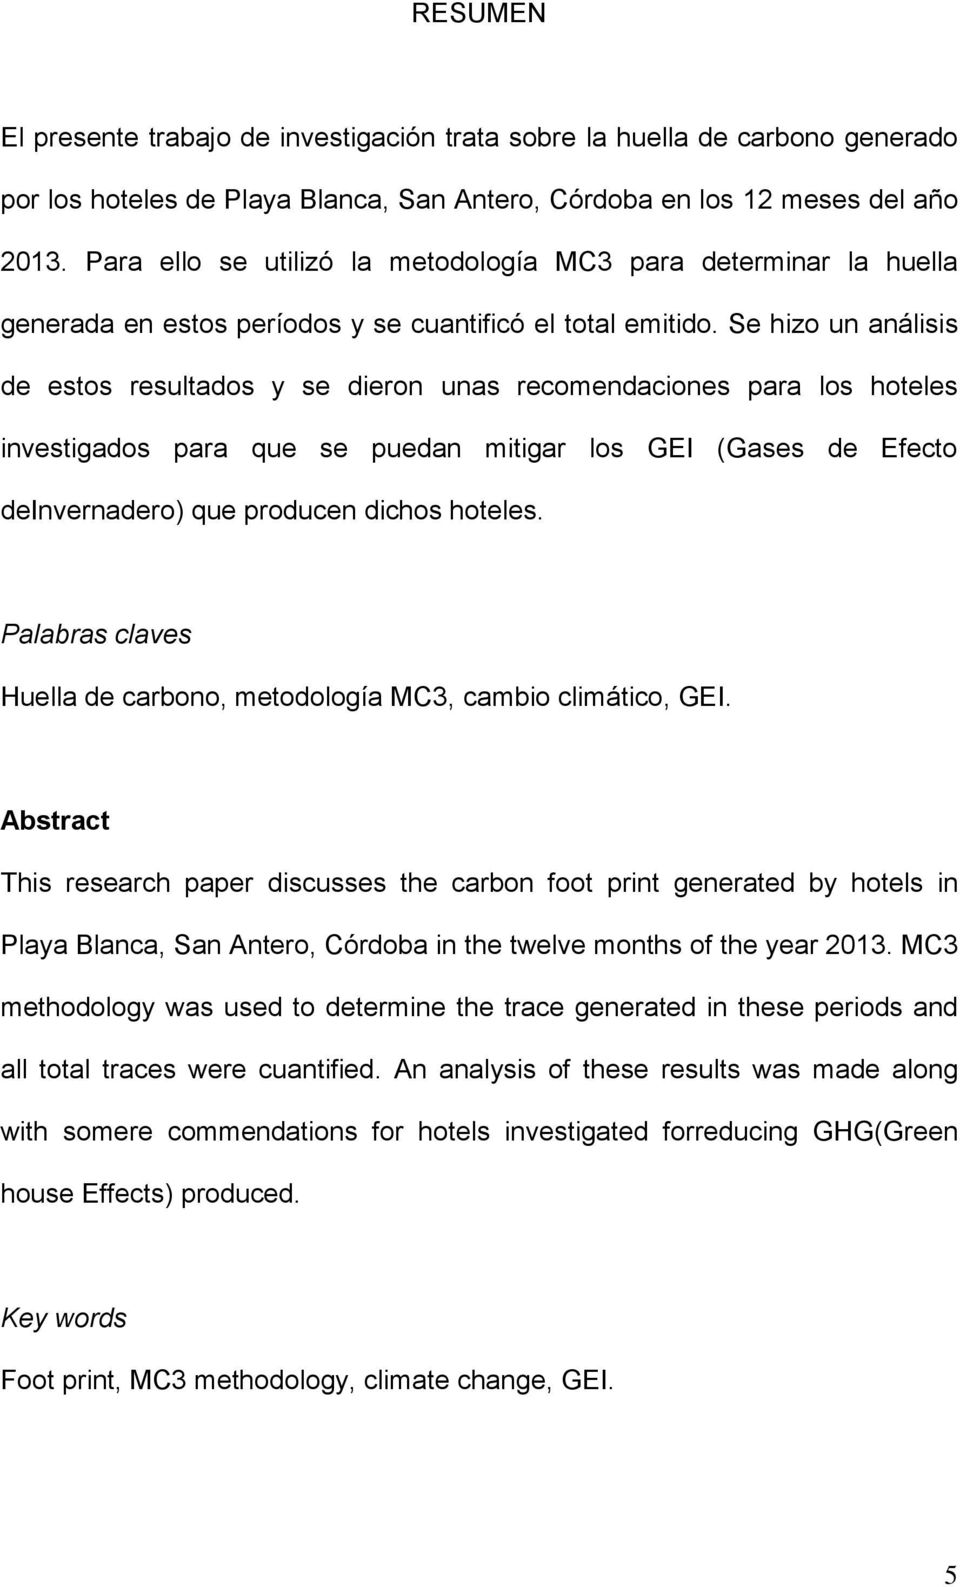 Se hizo un análisis estos resultados y se dieron unas recomendaciones para los hoteles investigados para que se puedan mitigar los GEI (Gases Efecto Invernaro) que producen dichos hoteles.